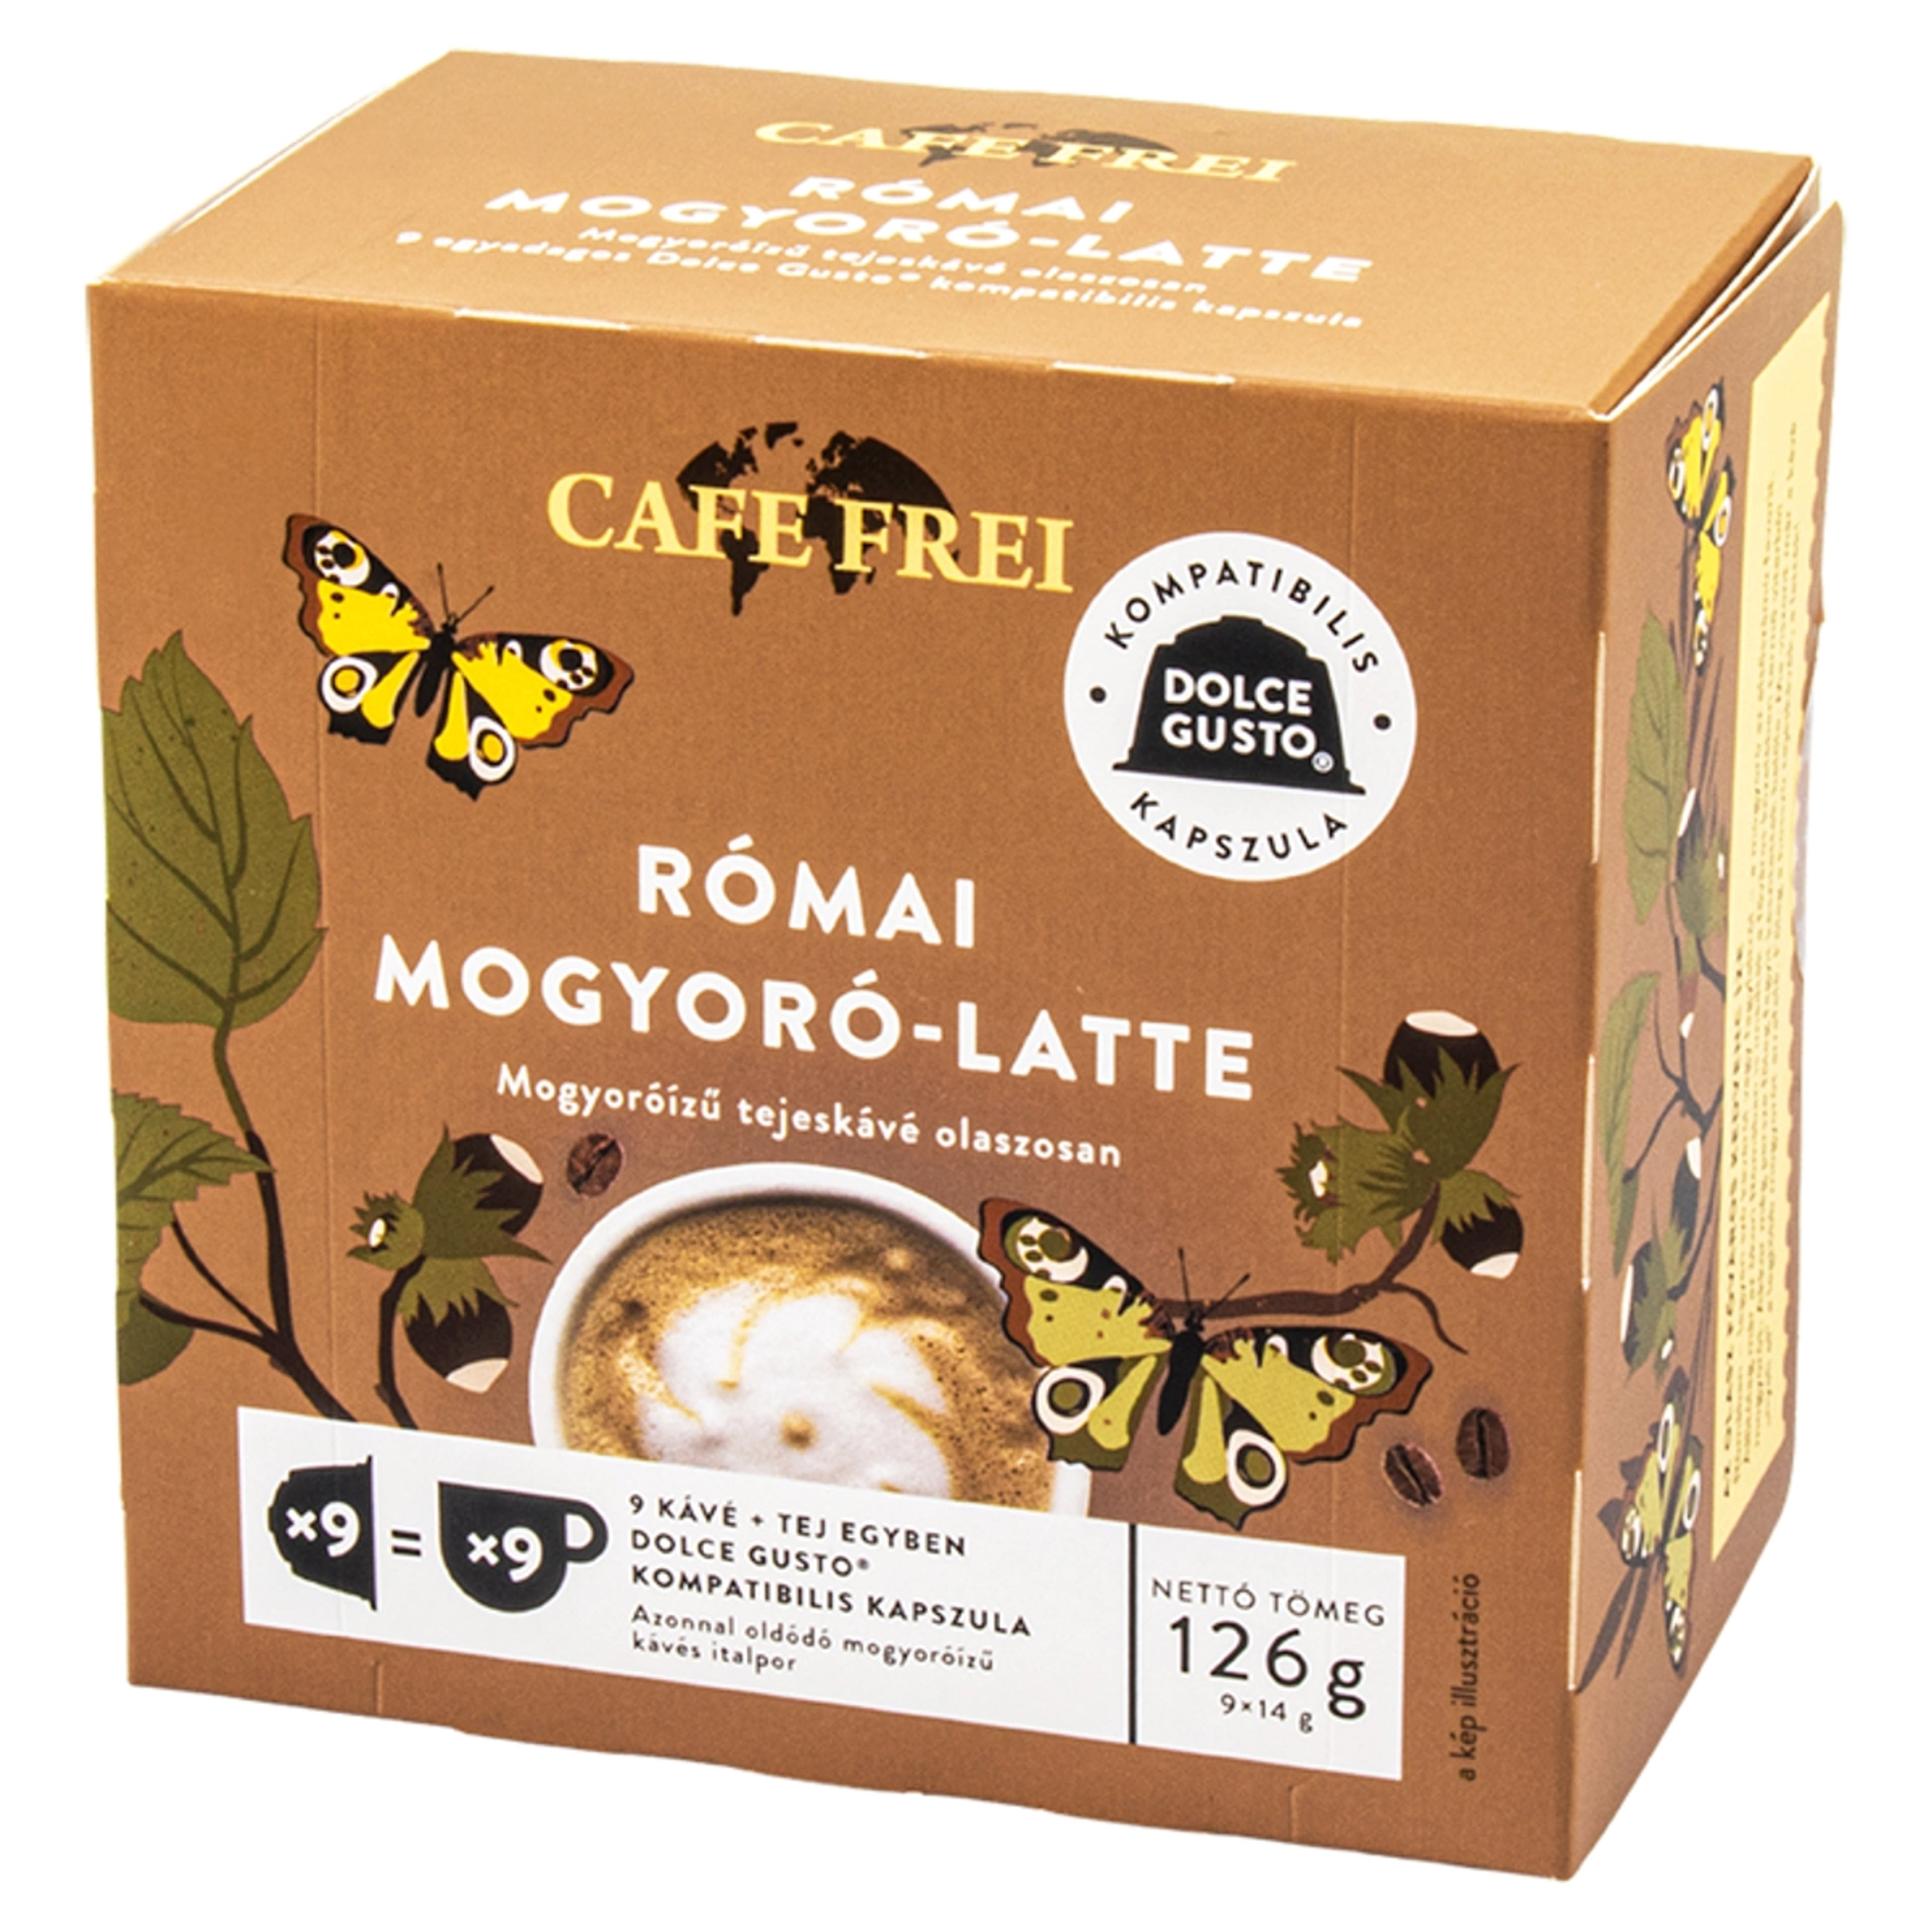 Cafe Frei Római Mogyoró Latte mogyoróízű tejeskávé kapszula - 9 db-1